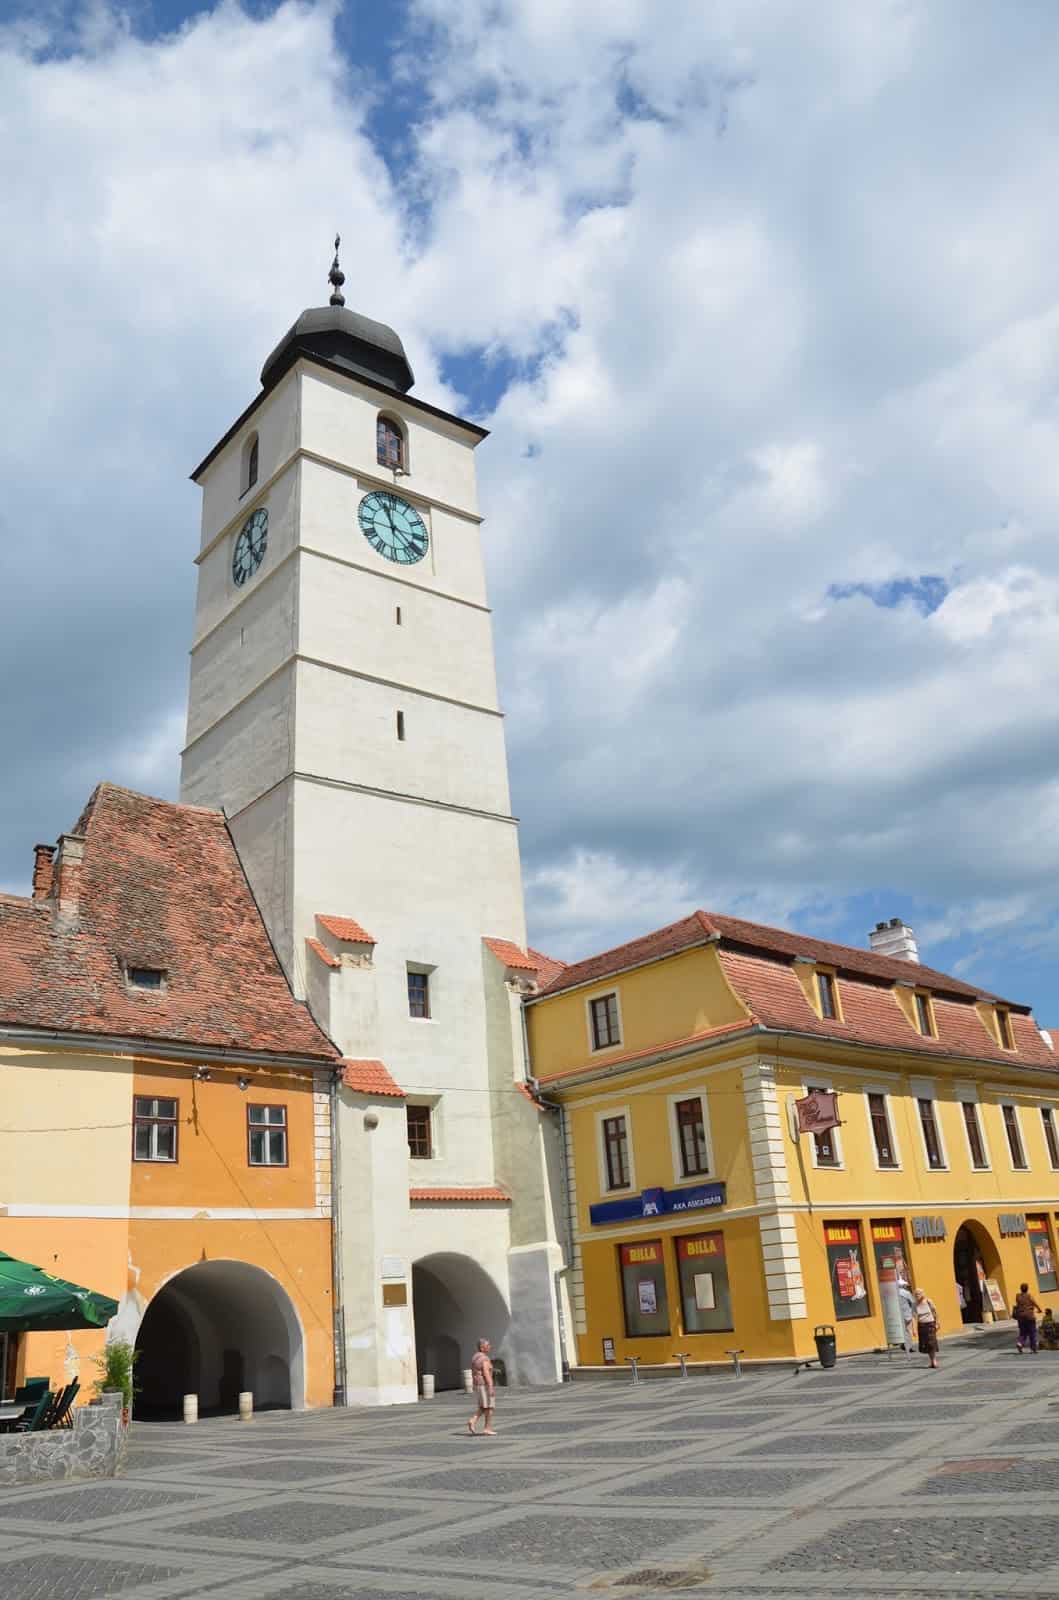 Council Tower in Sibiu, Romania